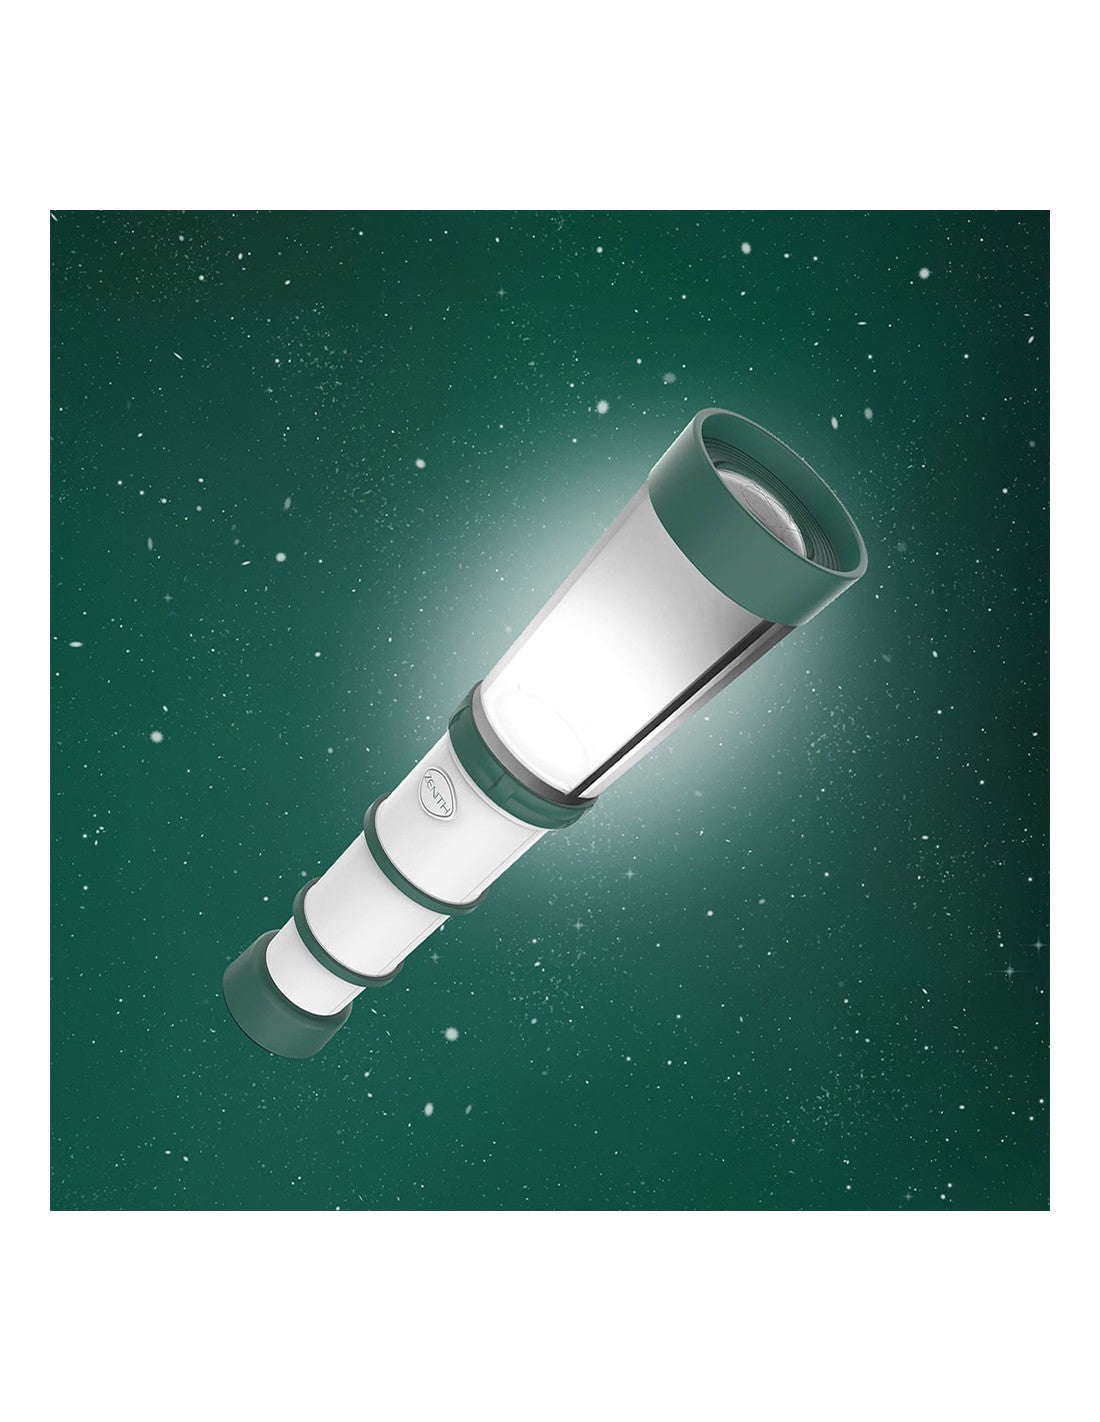 واحد -عصا الضوء الرسمية لايبيكس  | (ONE) EPEX Official Light Stick